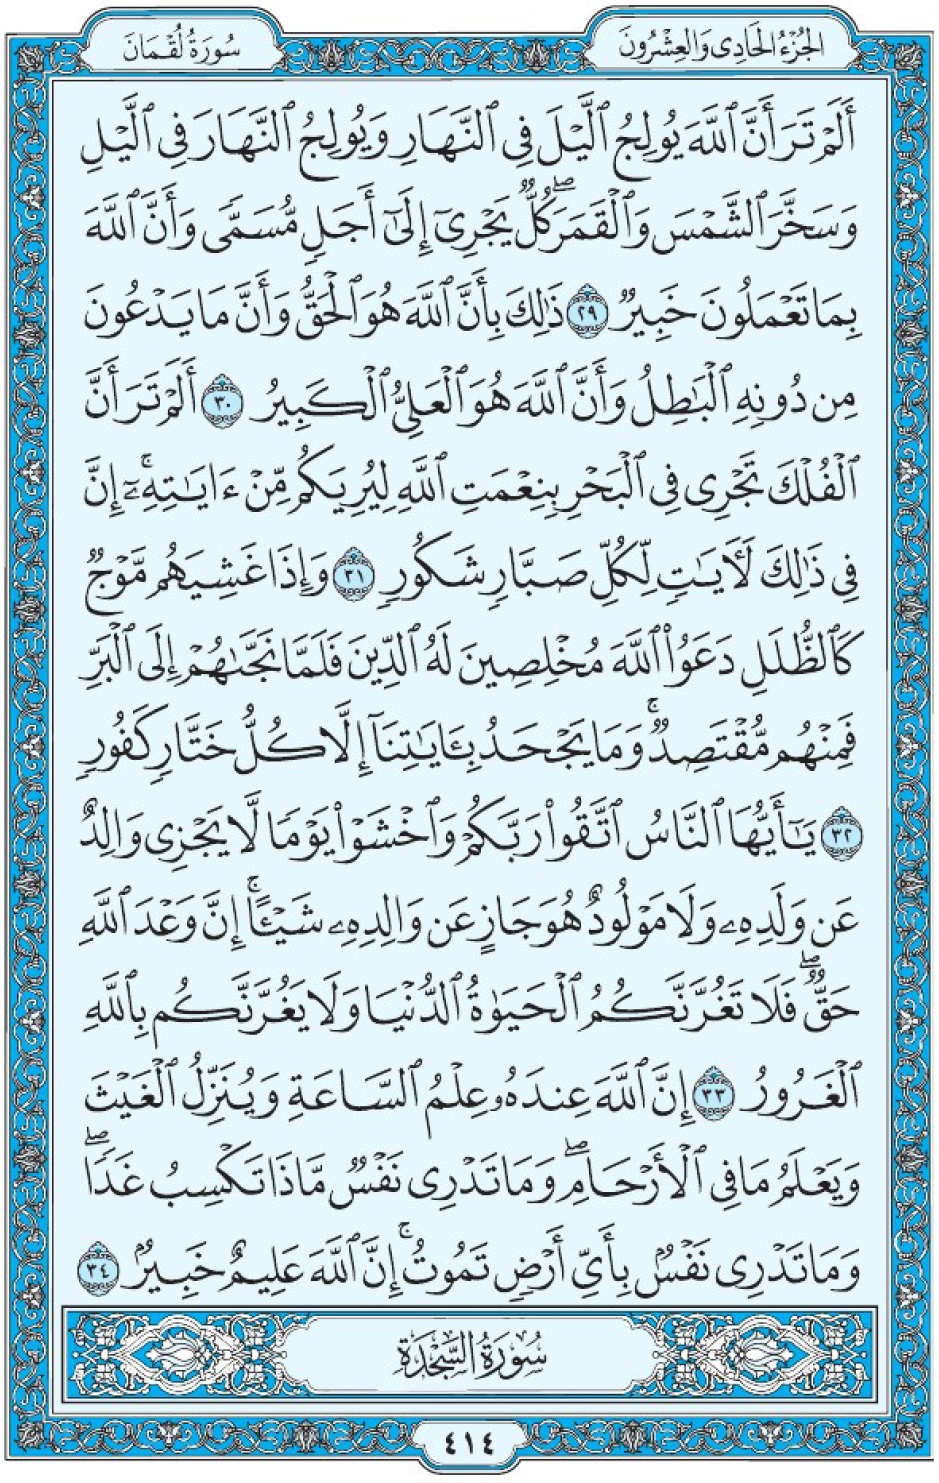 Коран Мединский мусхаф страница 414, Люкман, аят 29-34